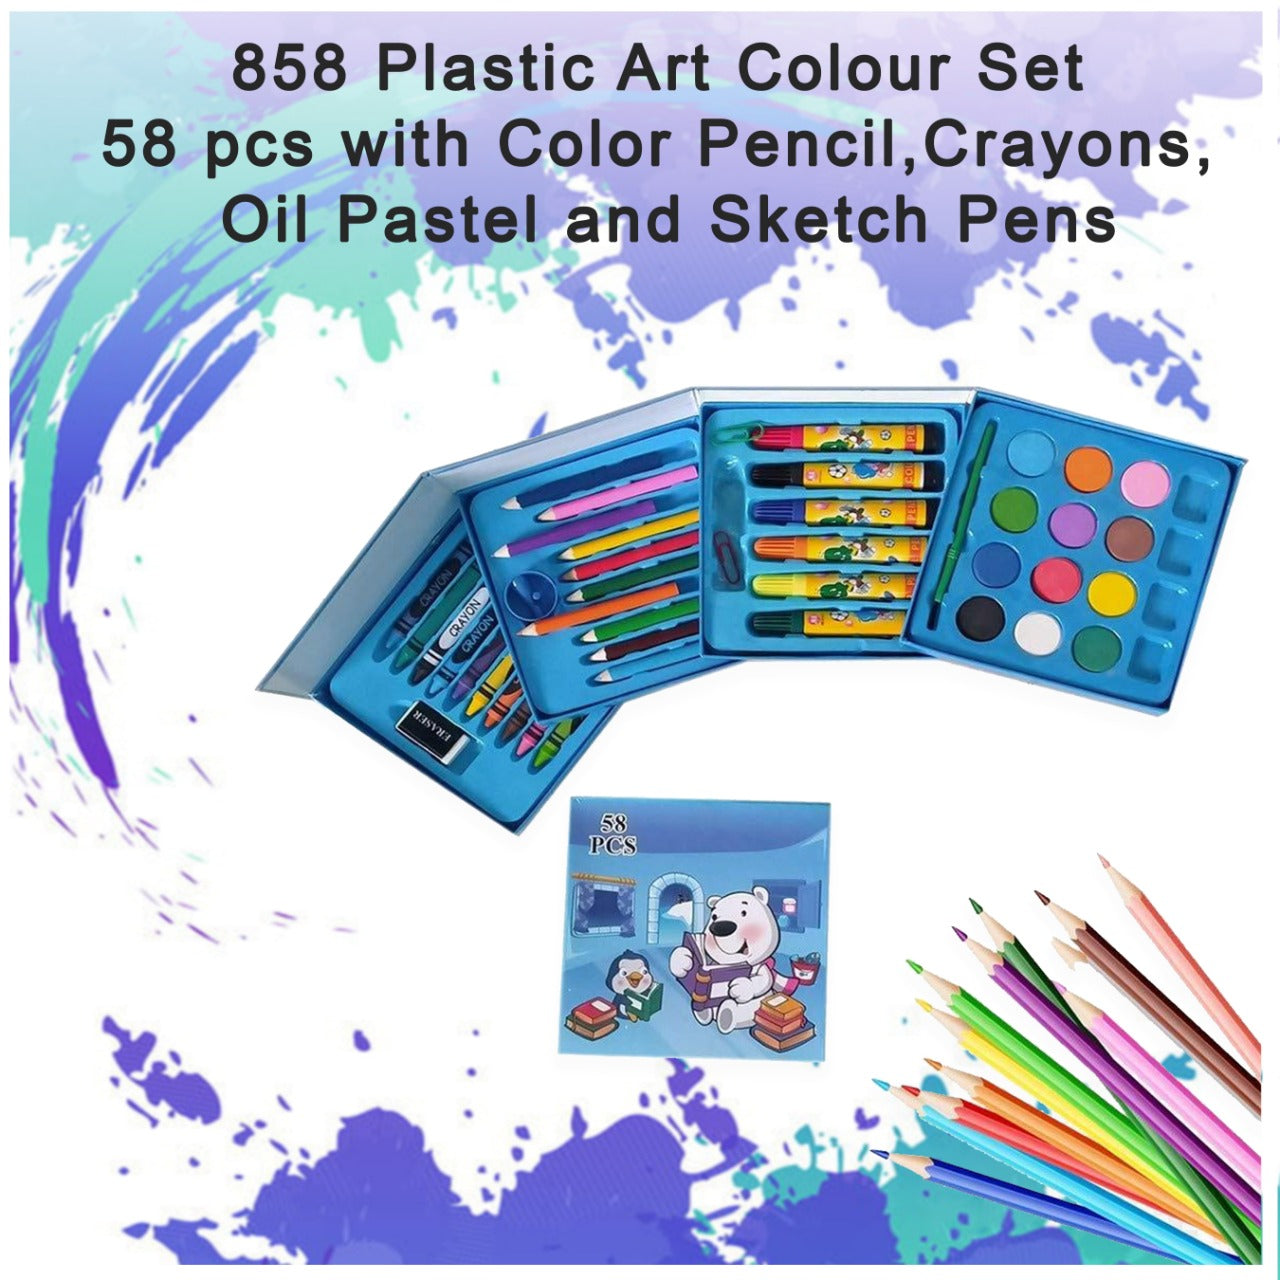 858 Plastic Art Colour Set 58 pcs with Color Pencil, Crayons, Oil Pastel and Sketch Pens DeoDap